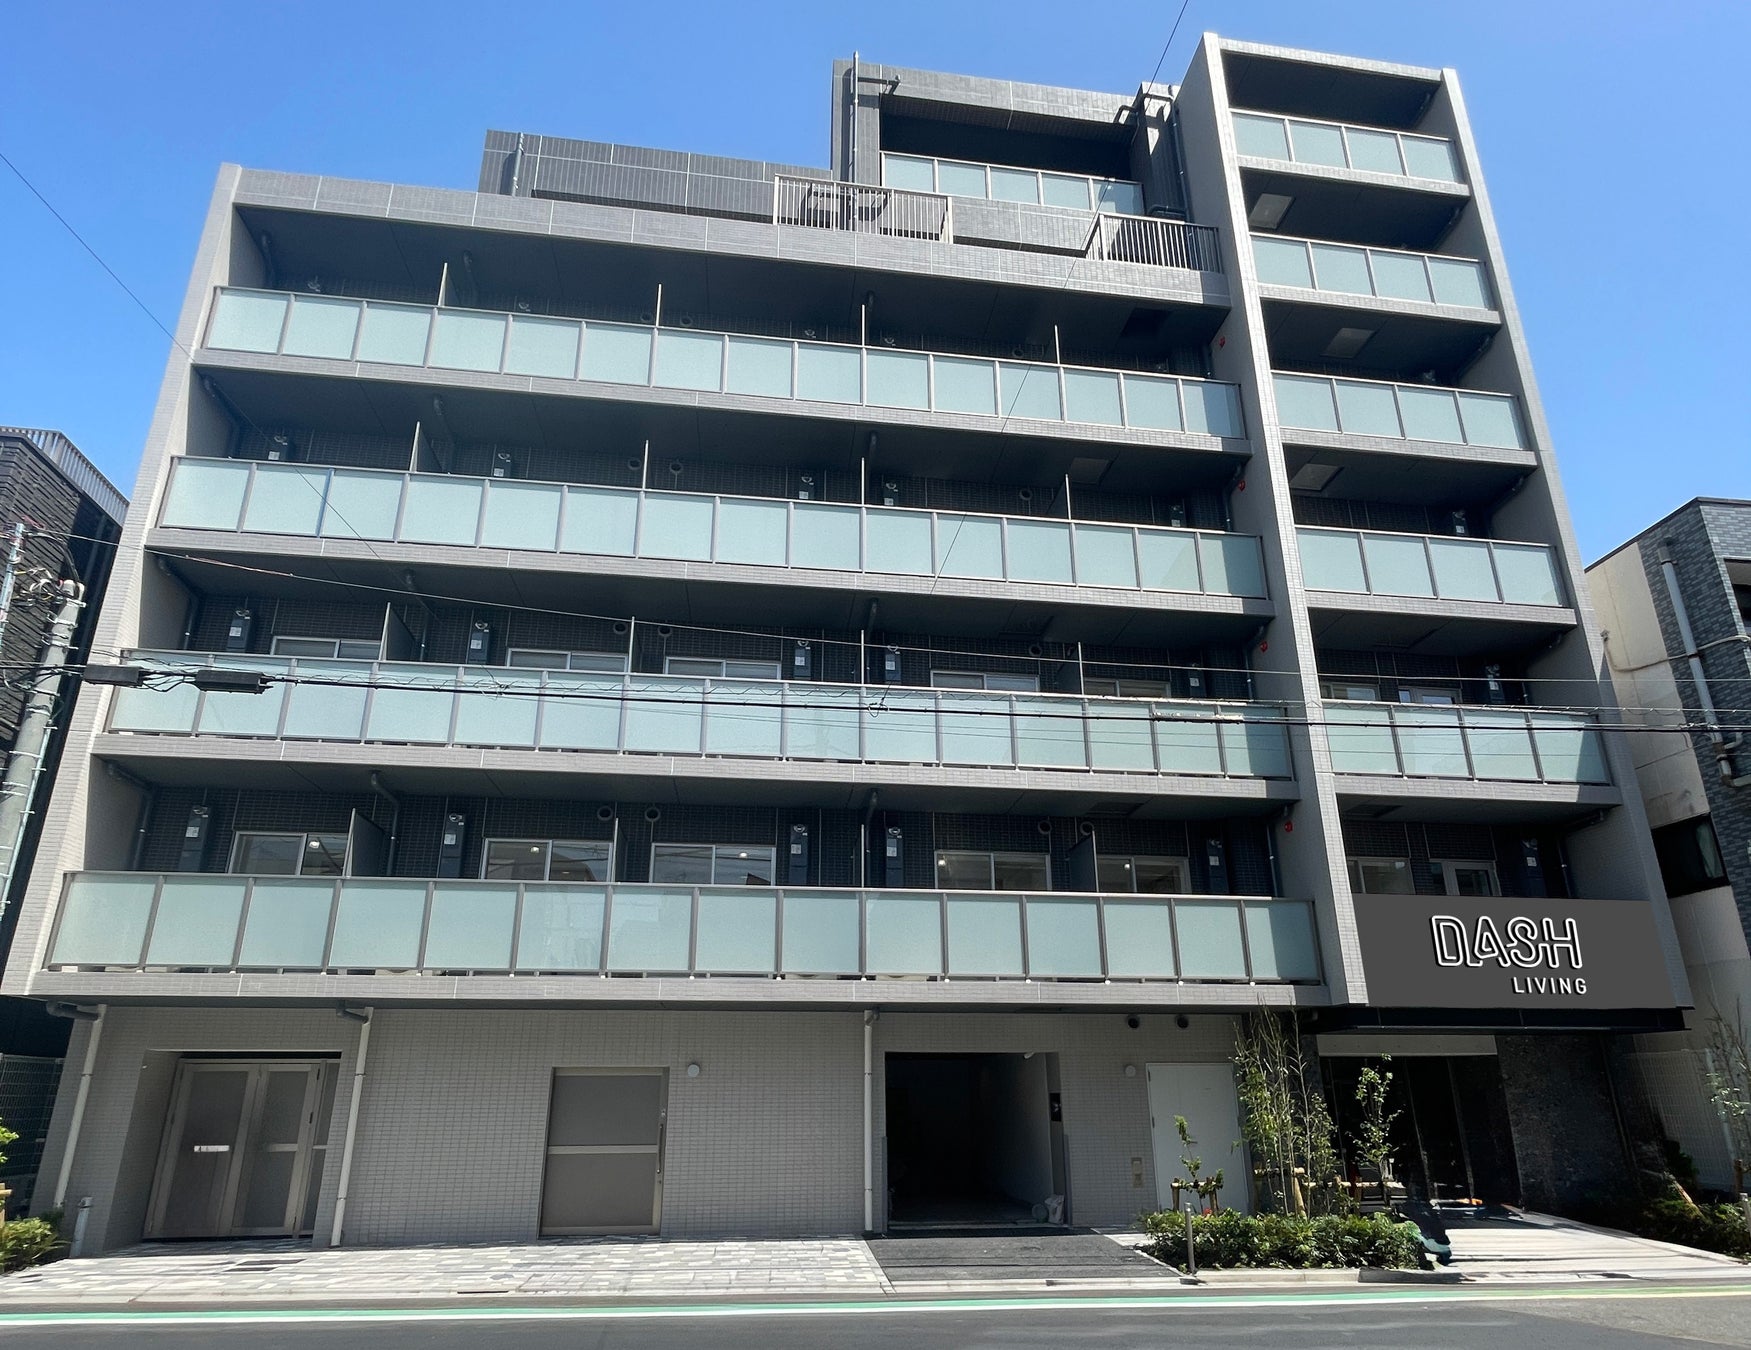 Dash Livingとブラックロックの不動産事業が多世帯住宅資産投資で提携し、東京で最初の物件を取得